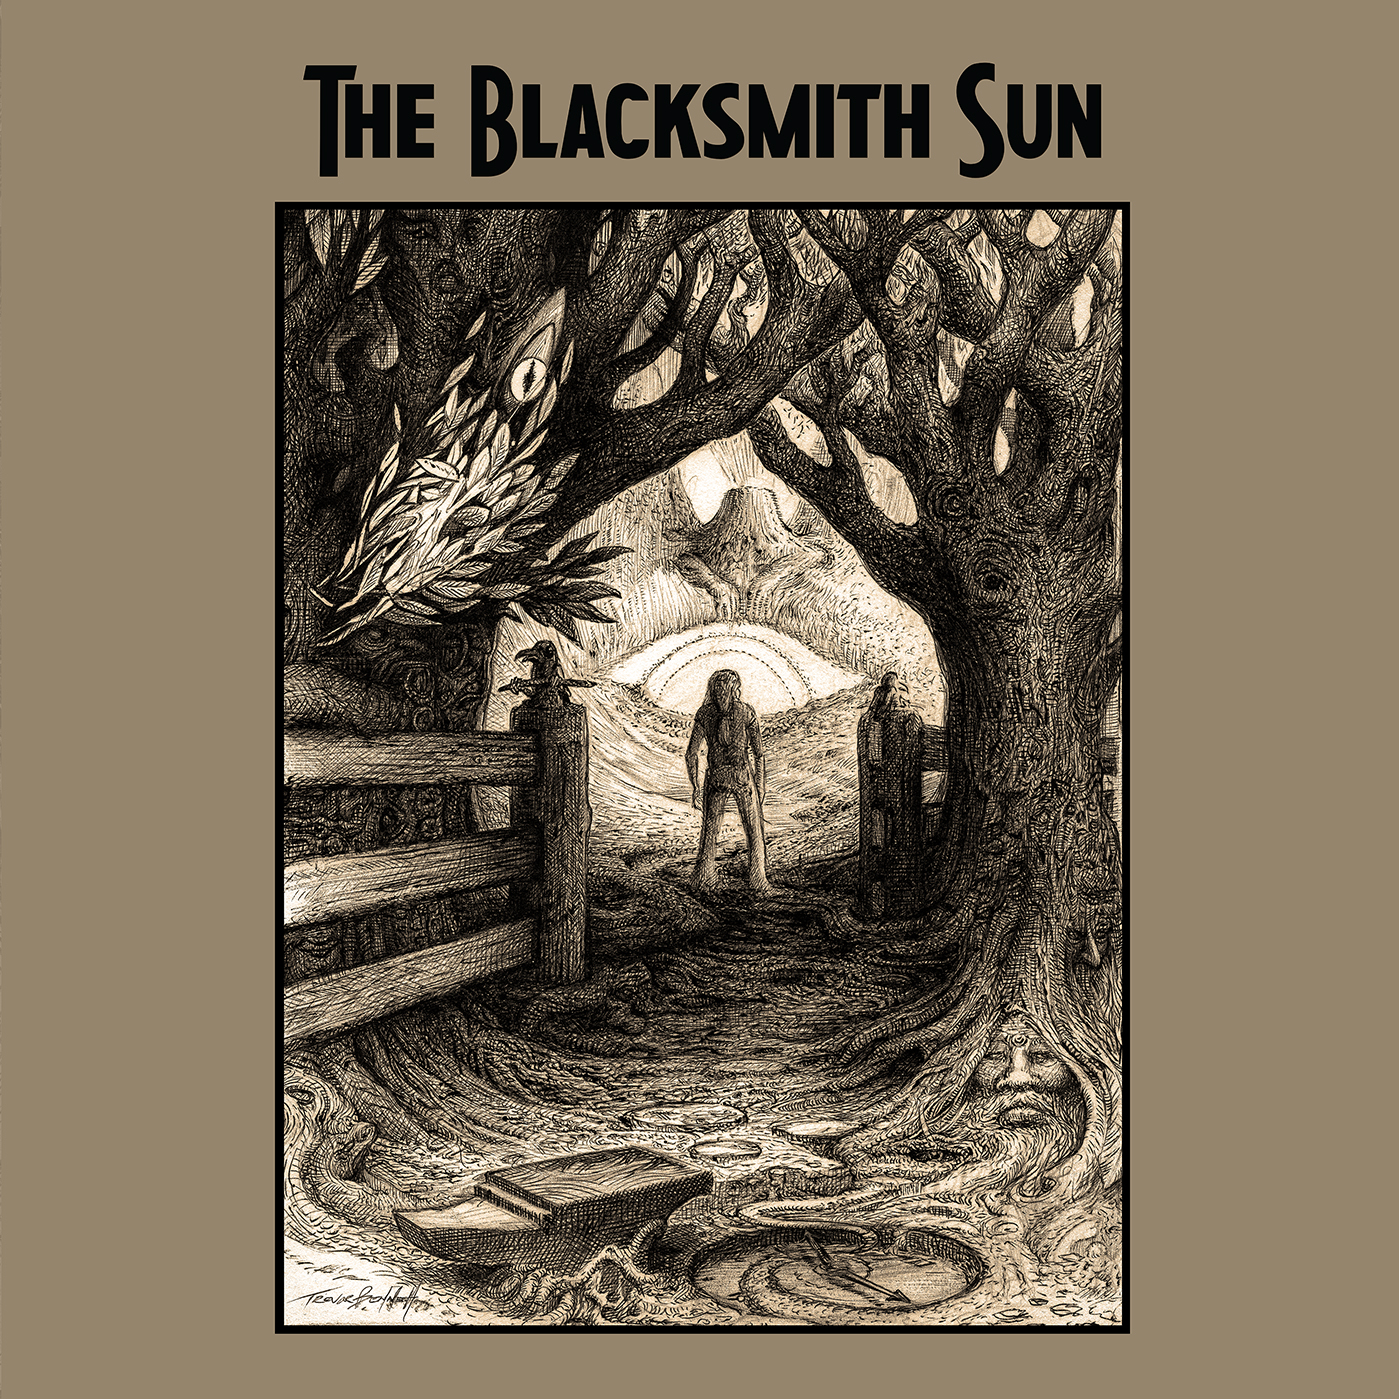 THE BLACKSMITH SUN ALBUM OUT NOW